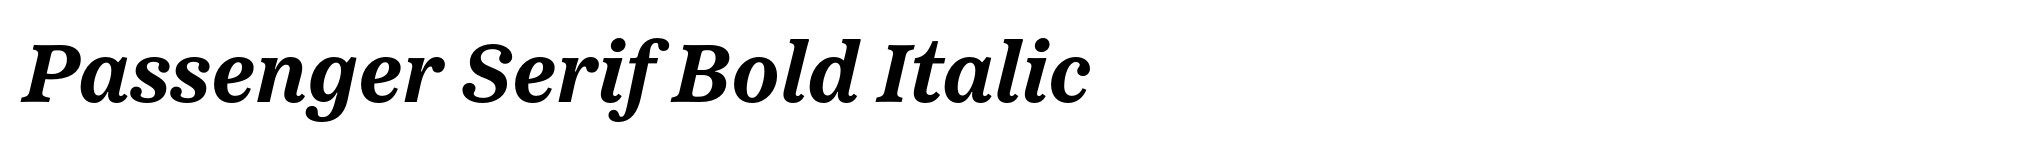 Passenger Serif Bold Italic image